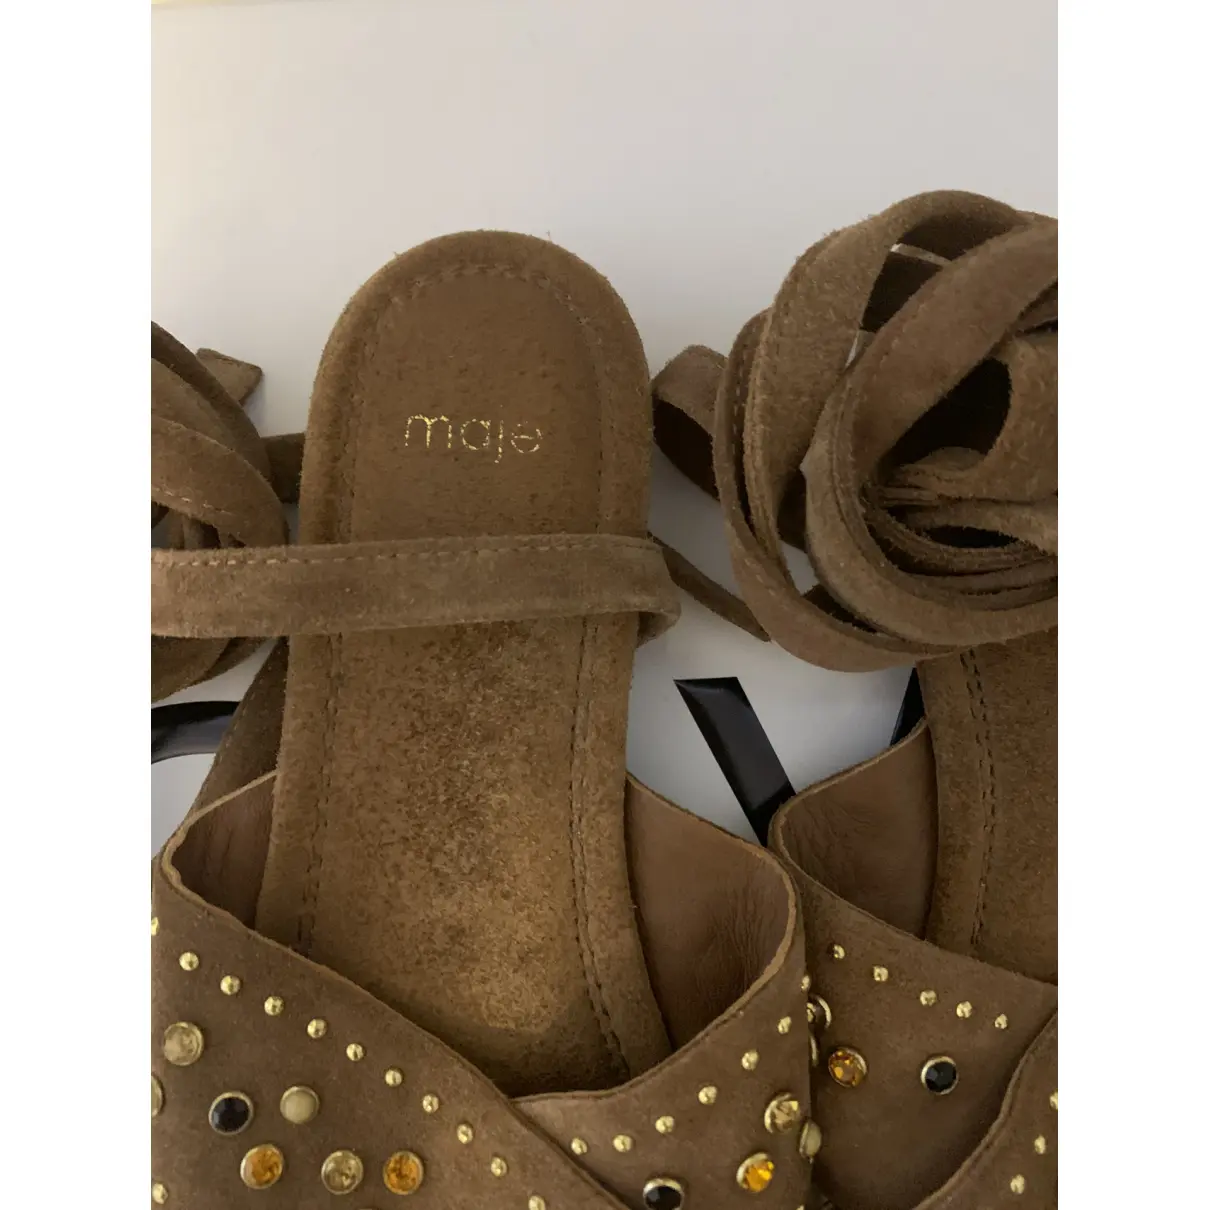 Buy Maje Spring Summer 2019 sandal online